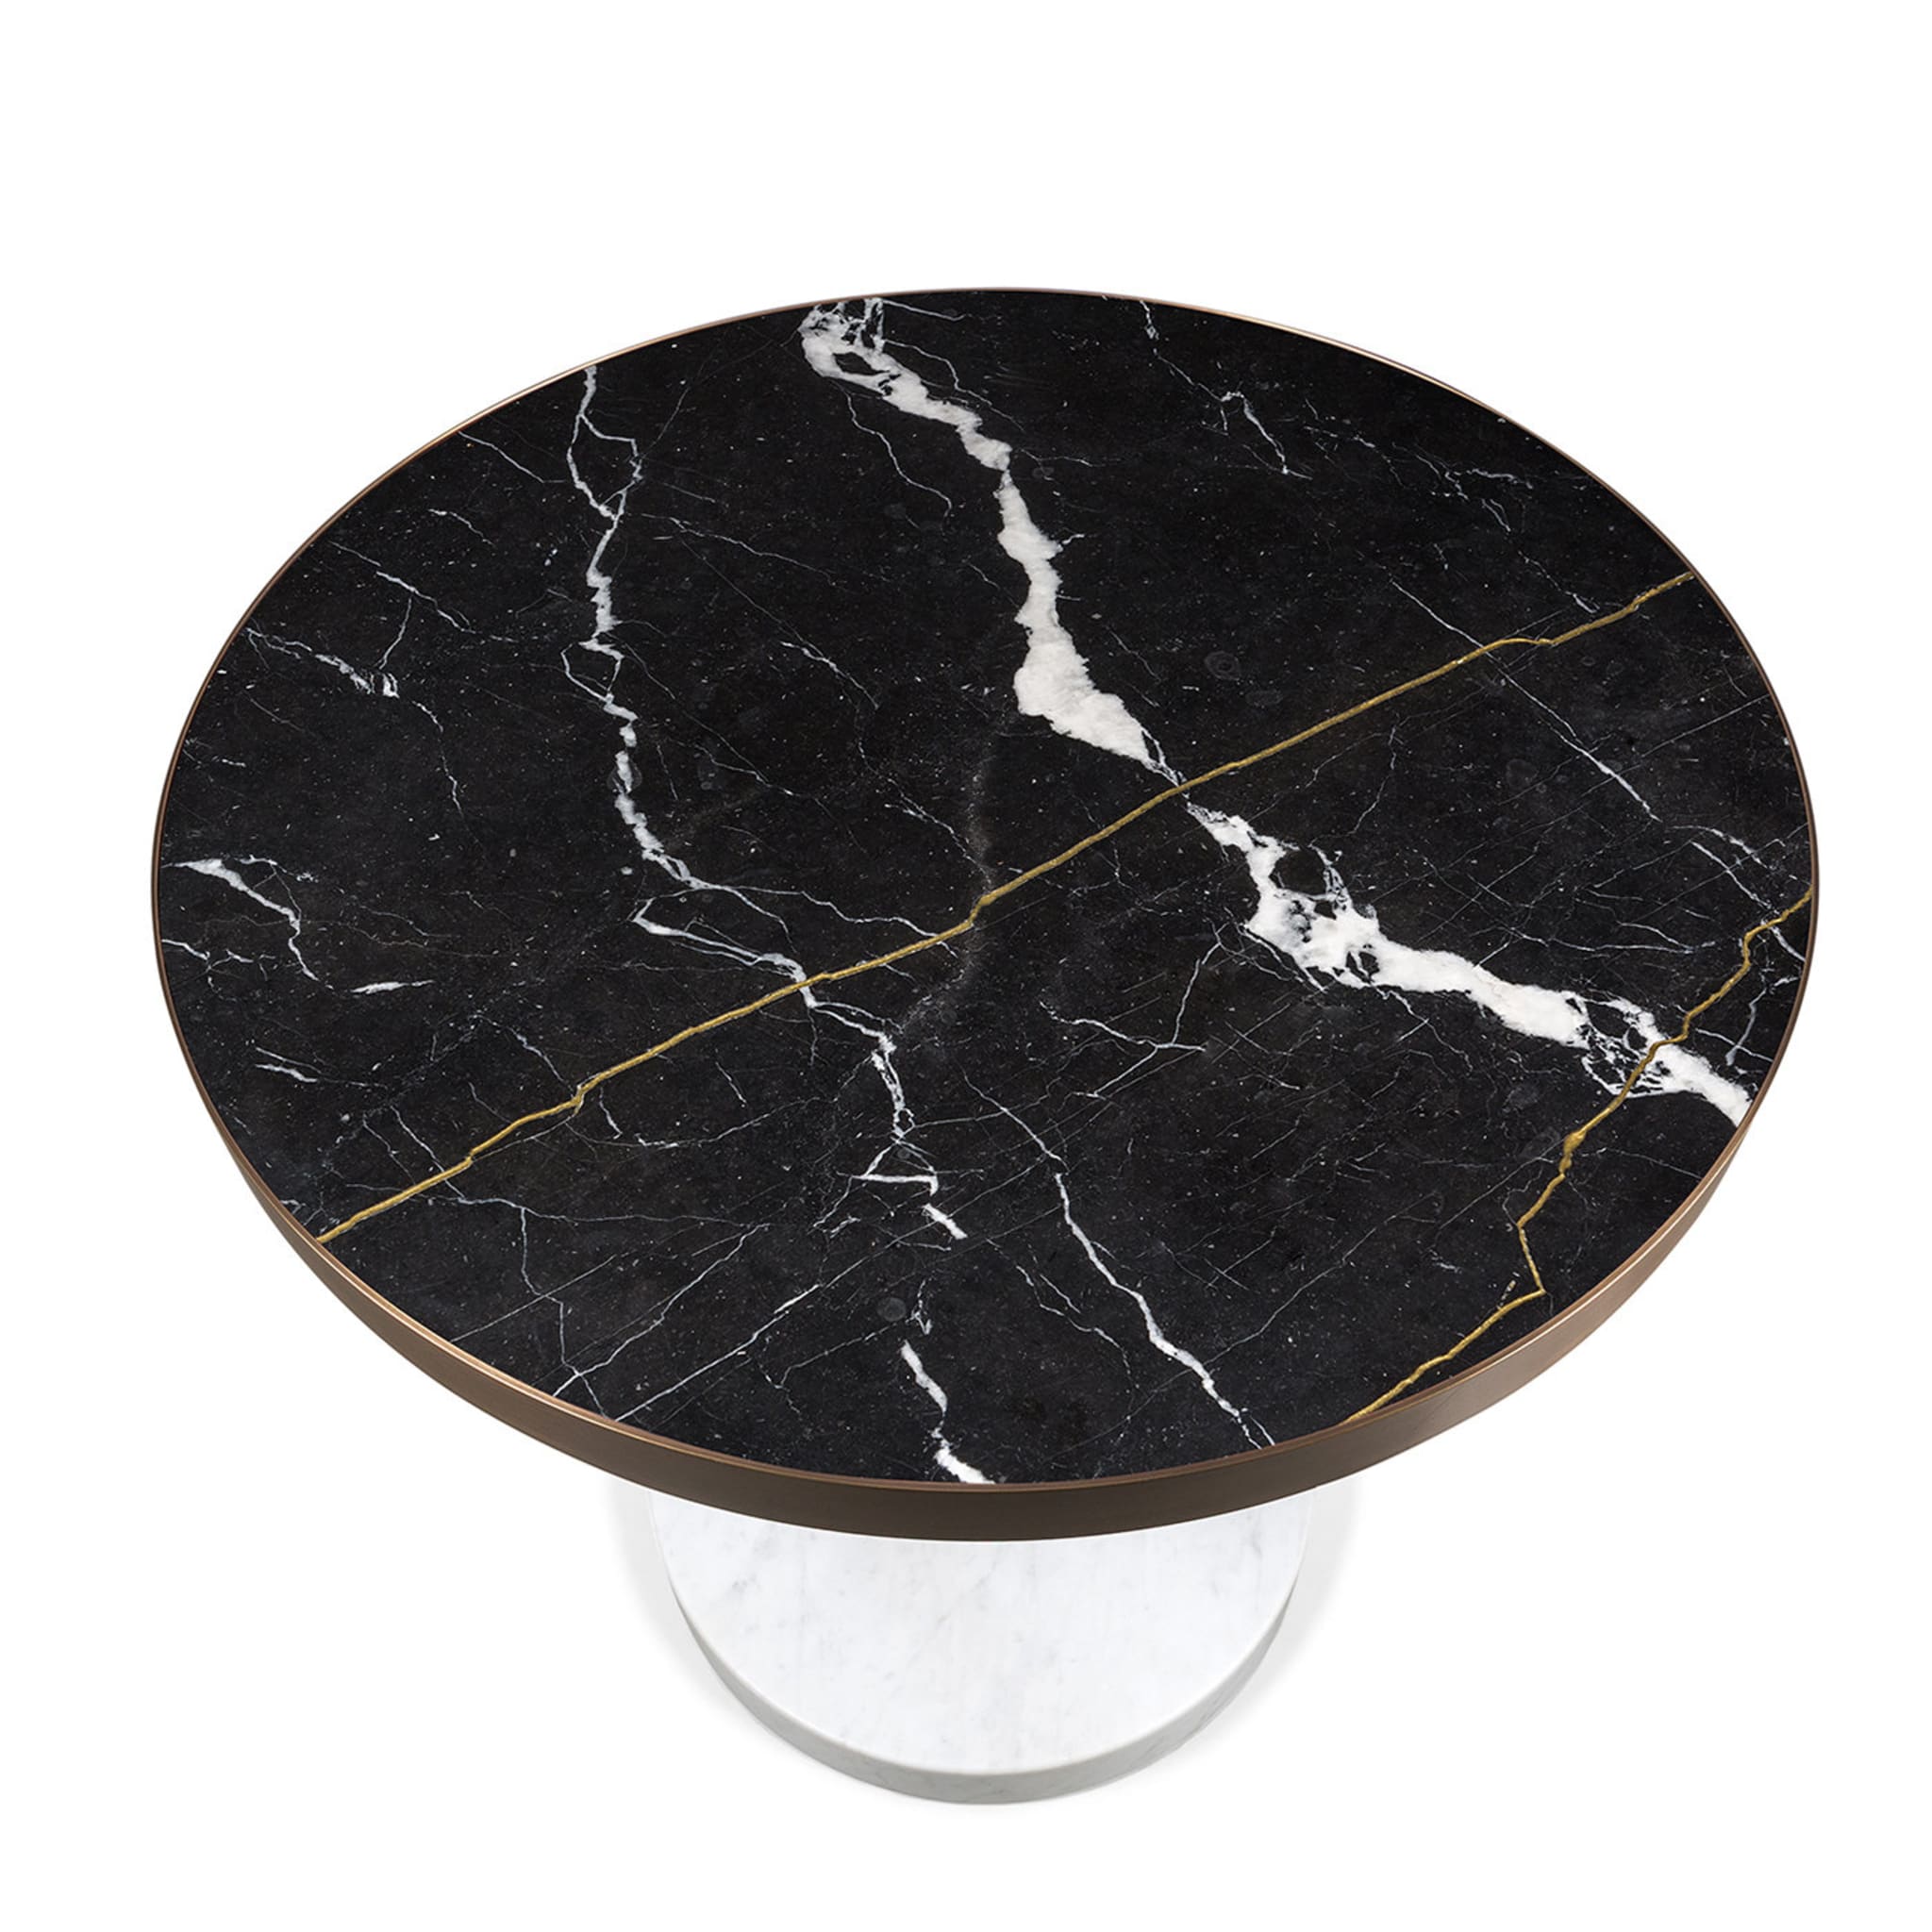 Rene Bistro Table in Nero Marquinia Marble by Piero Lissoni - Alternative view 2